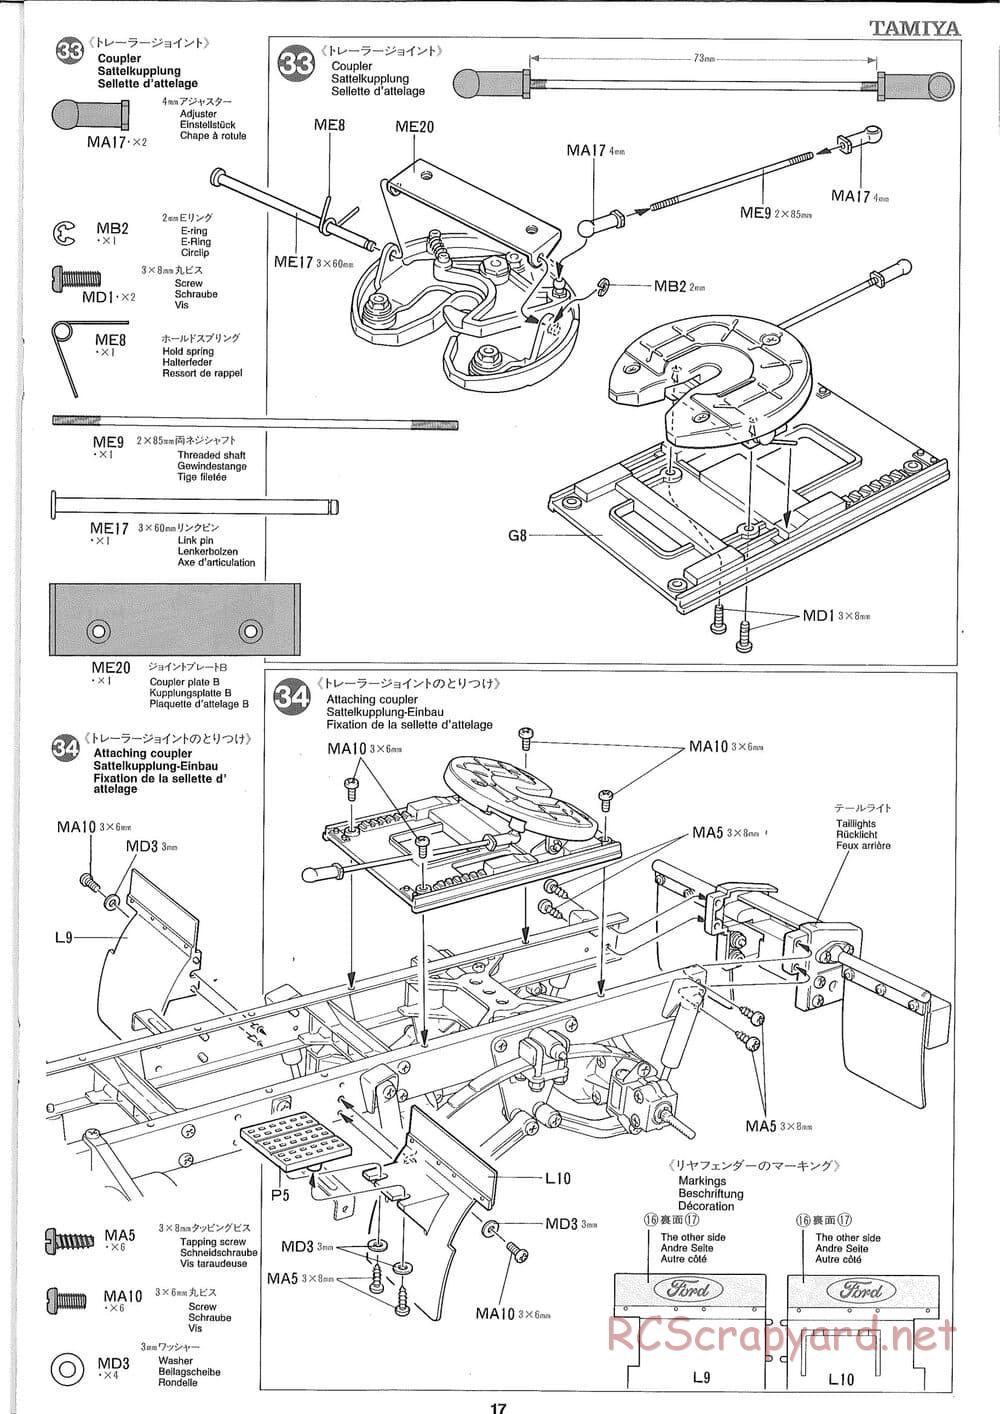 Tamiya - Ford Aeromax - Manual - Page 17